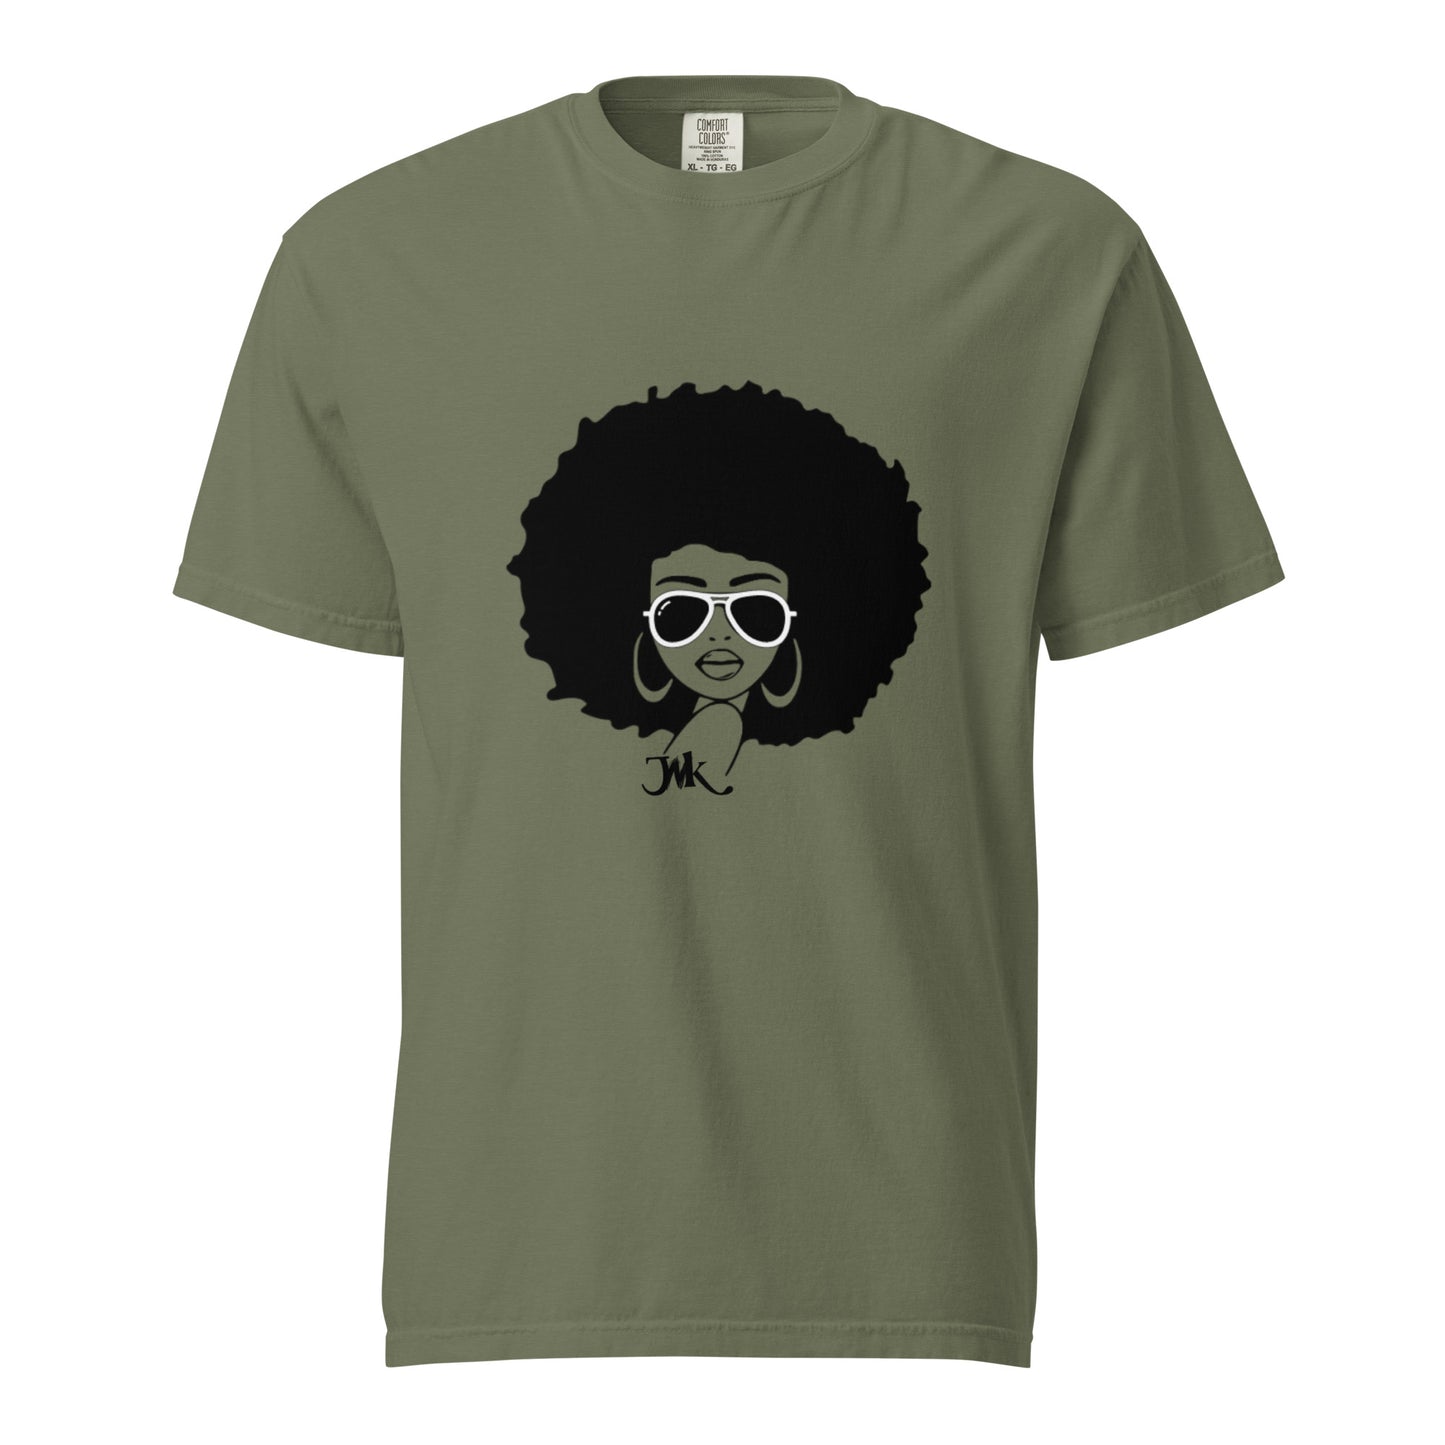 T-Shirt afro femme - Bel négres